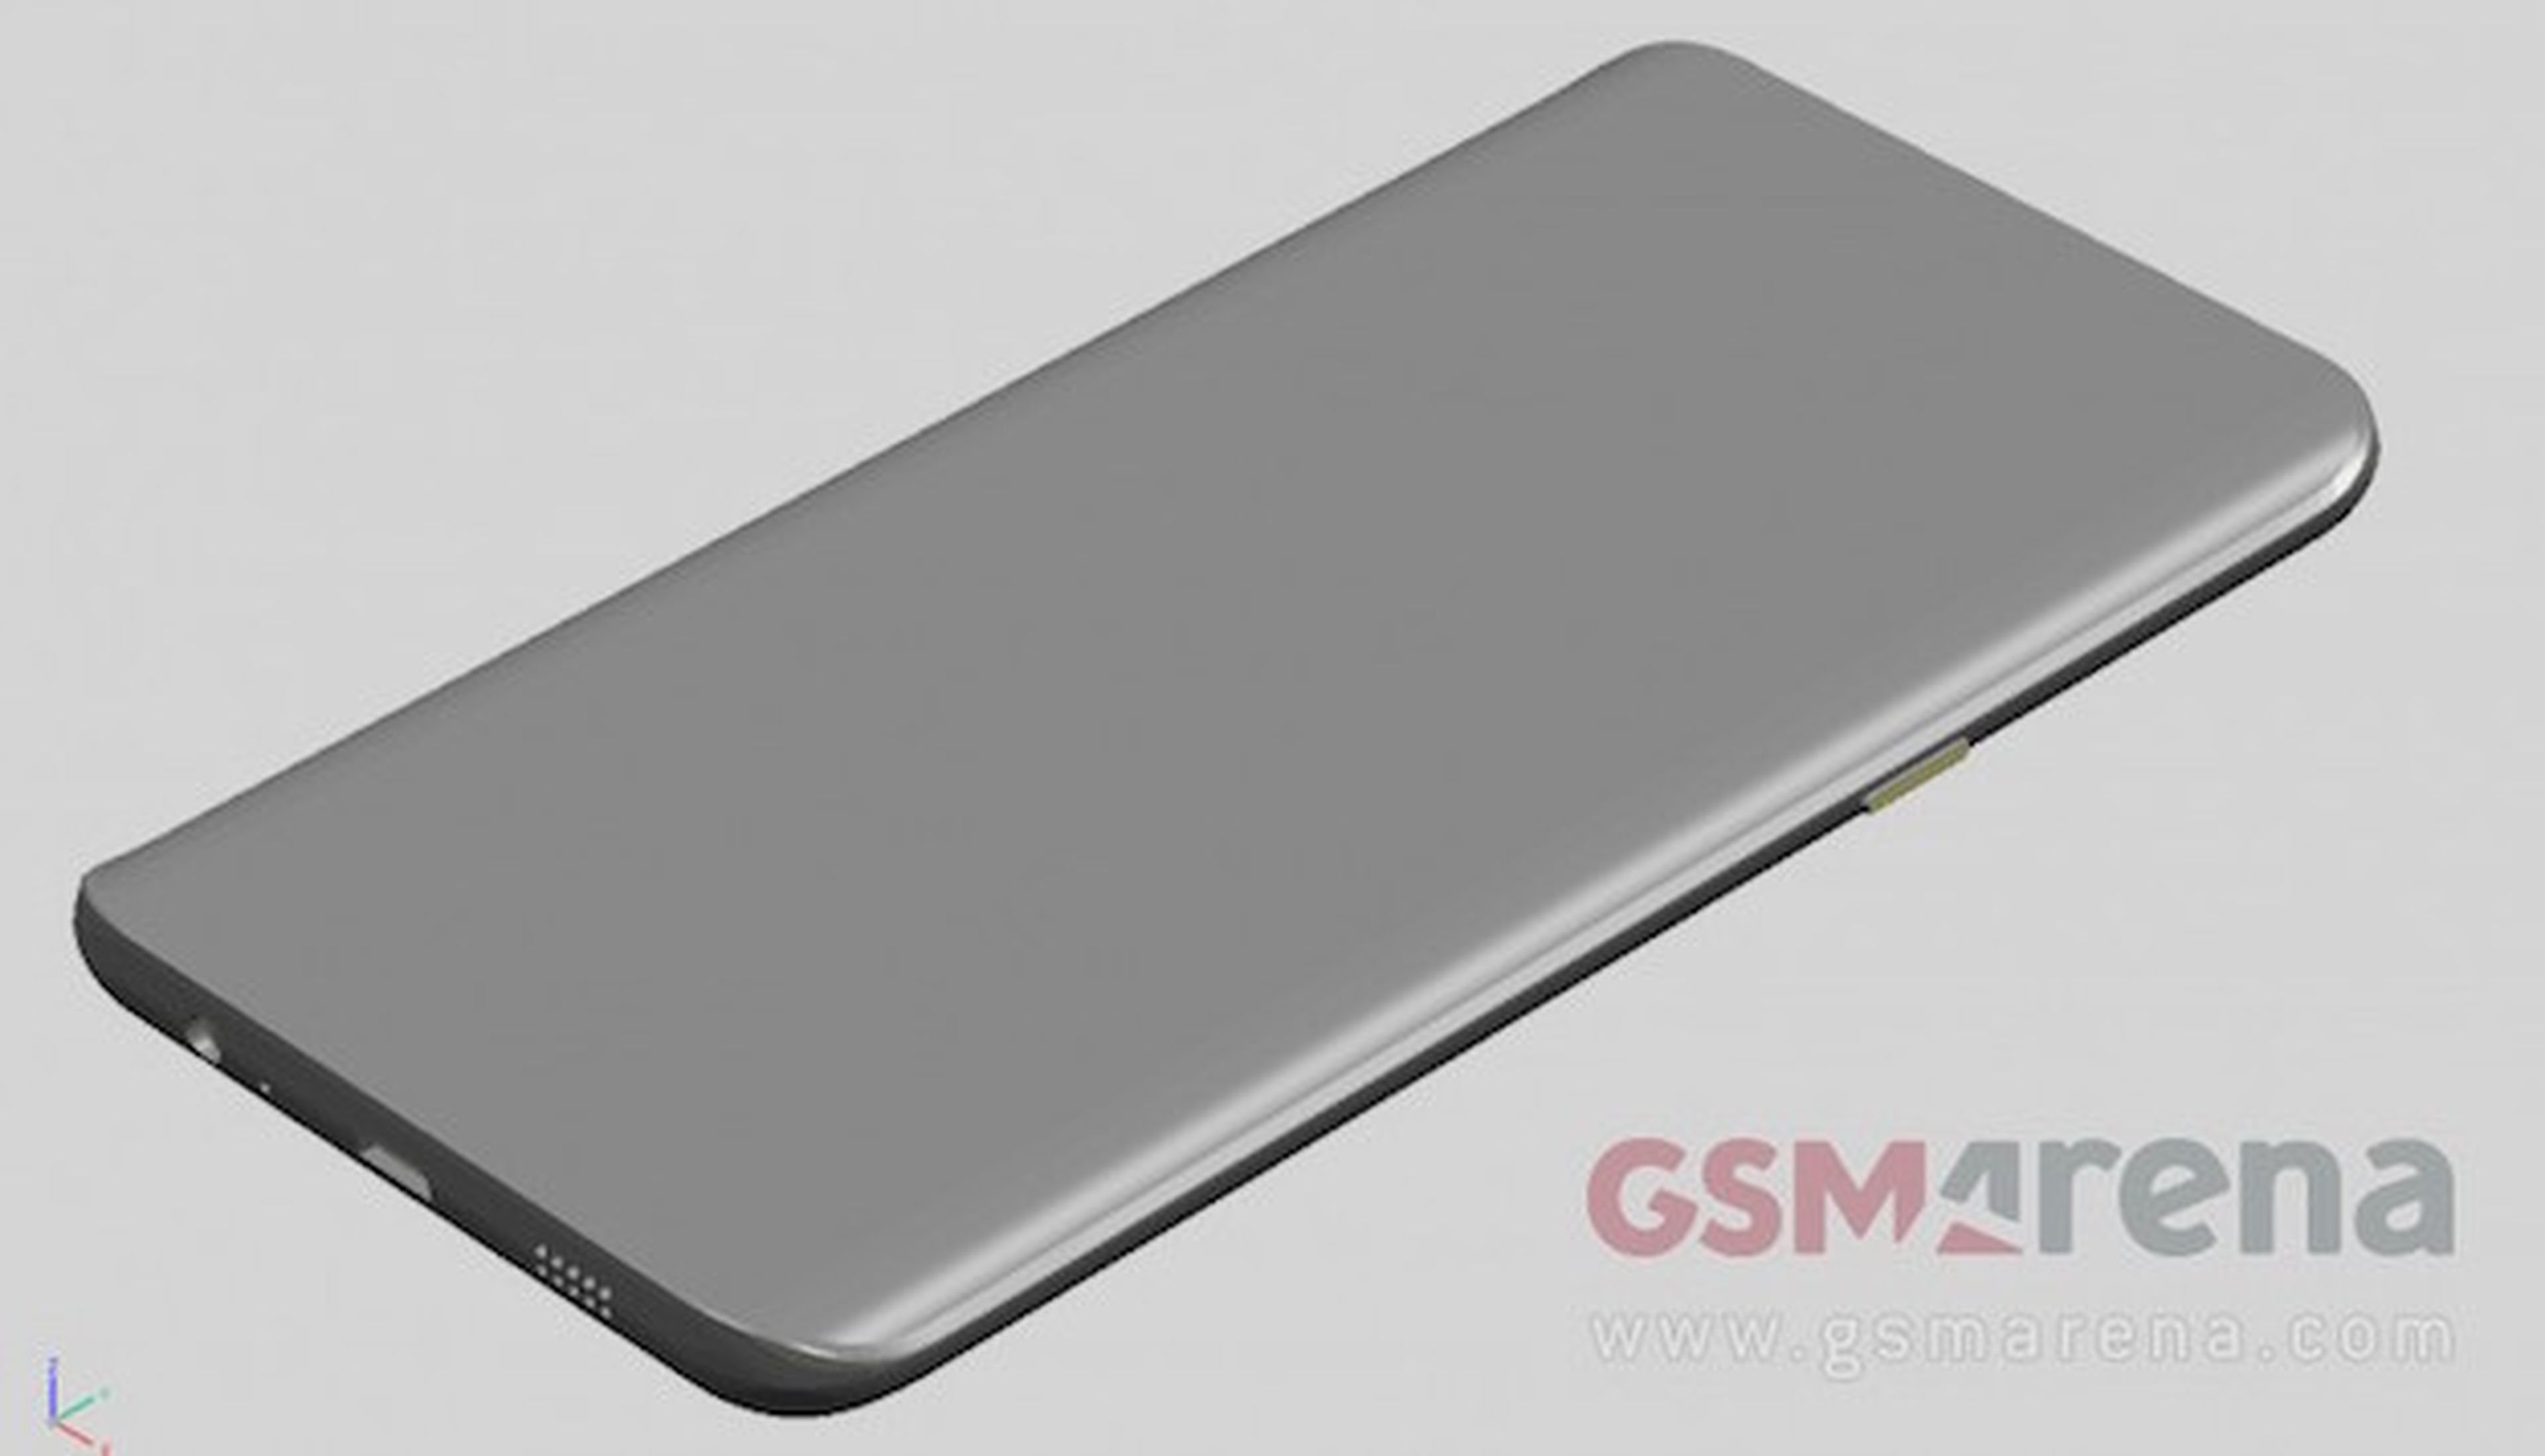 Más detalles del Samsung Galaxy Note 5 y Galaxy S6 Edge Plus